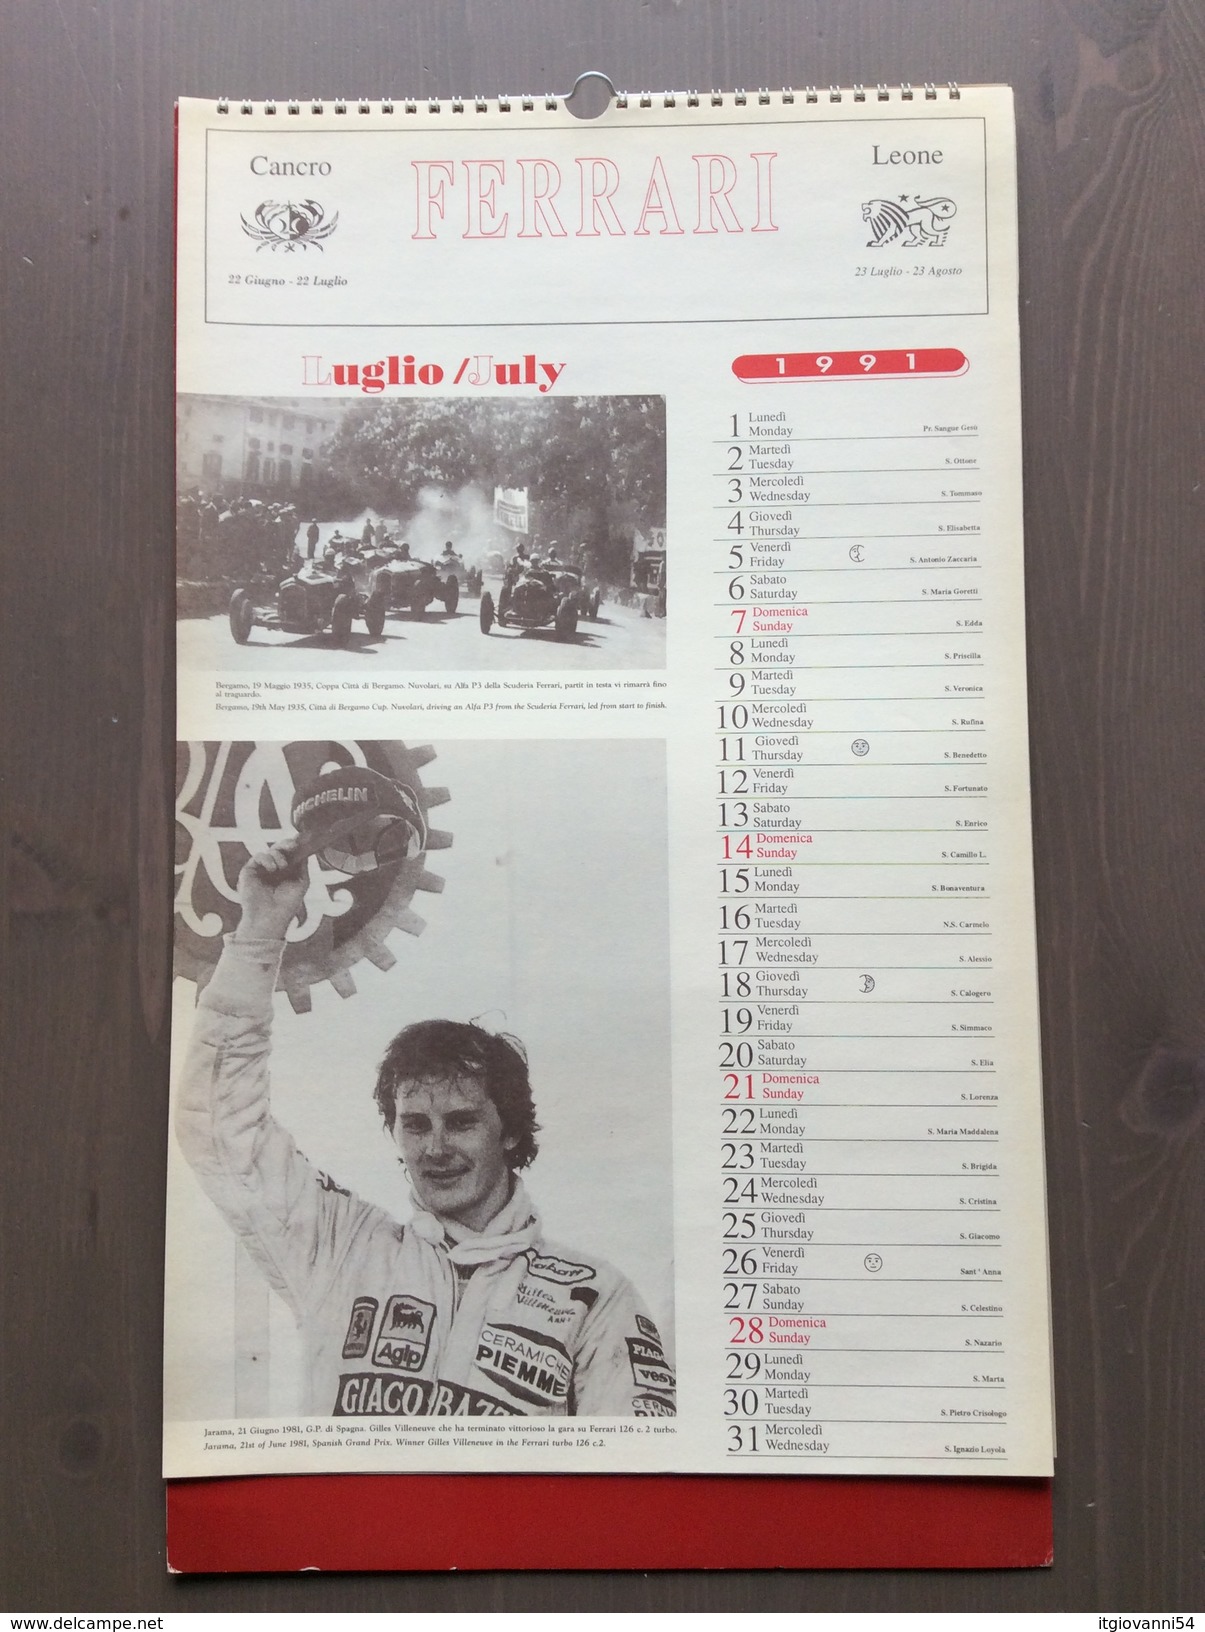 Calendario da collezione Ferrari 1991 con custodia esterna